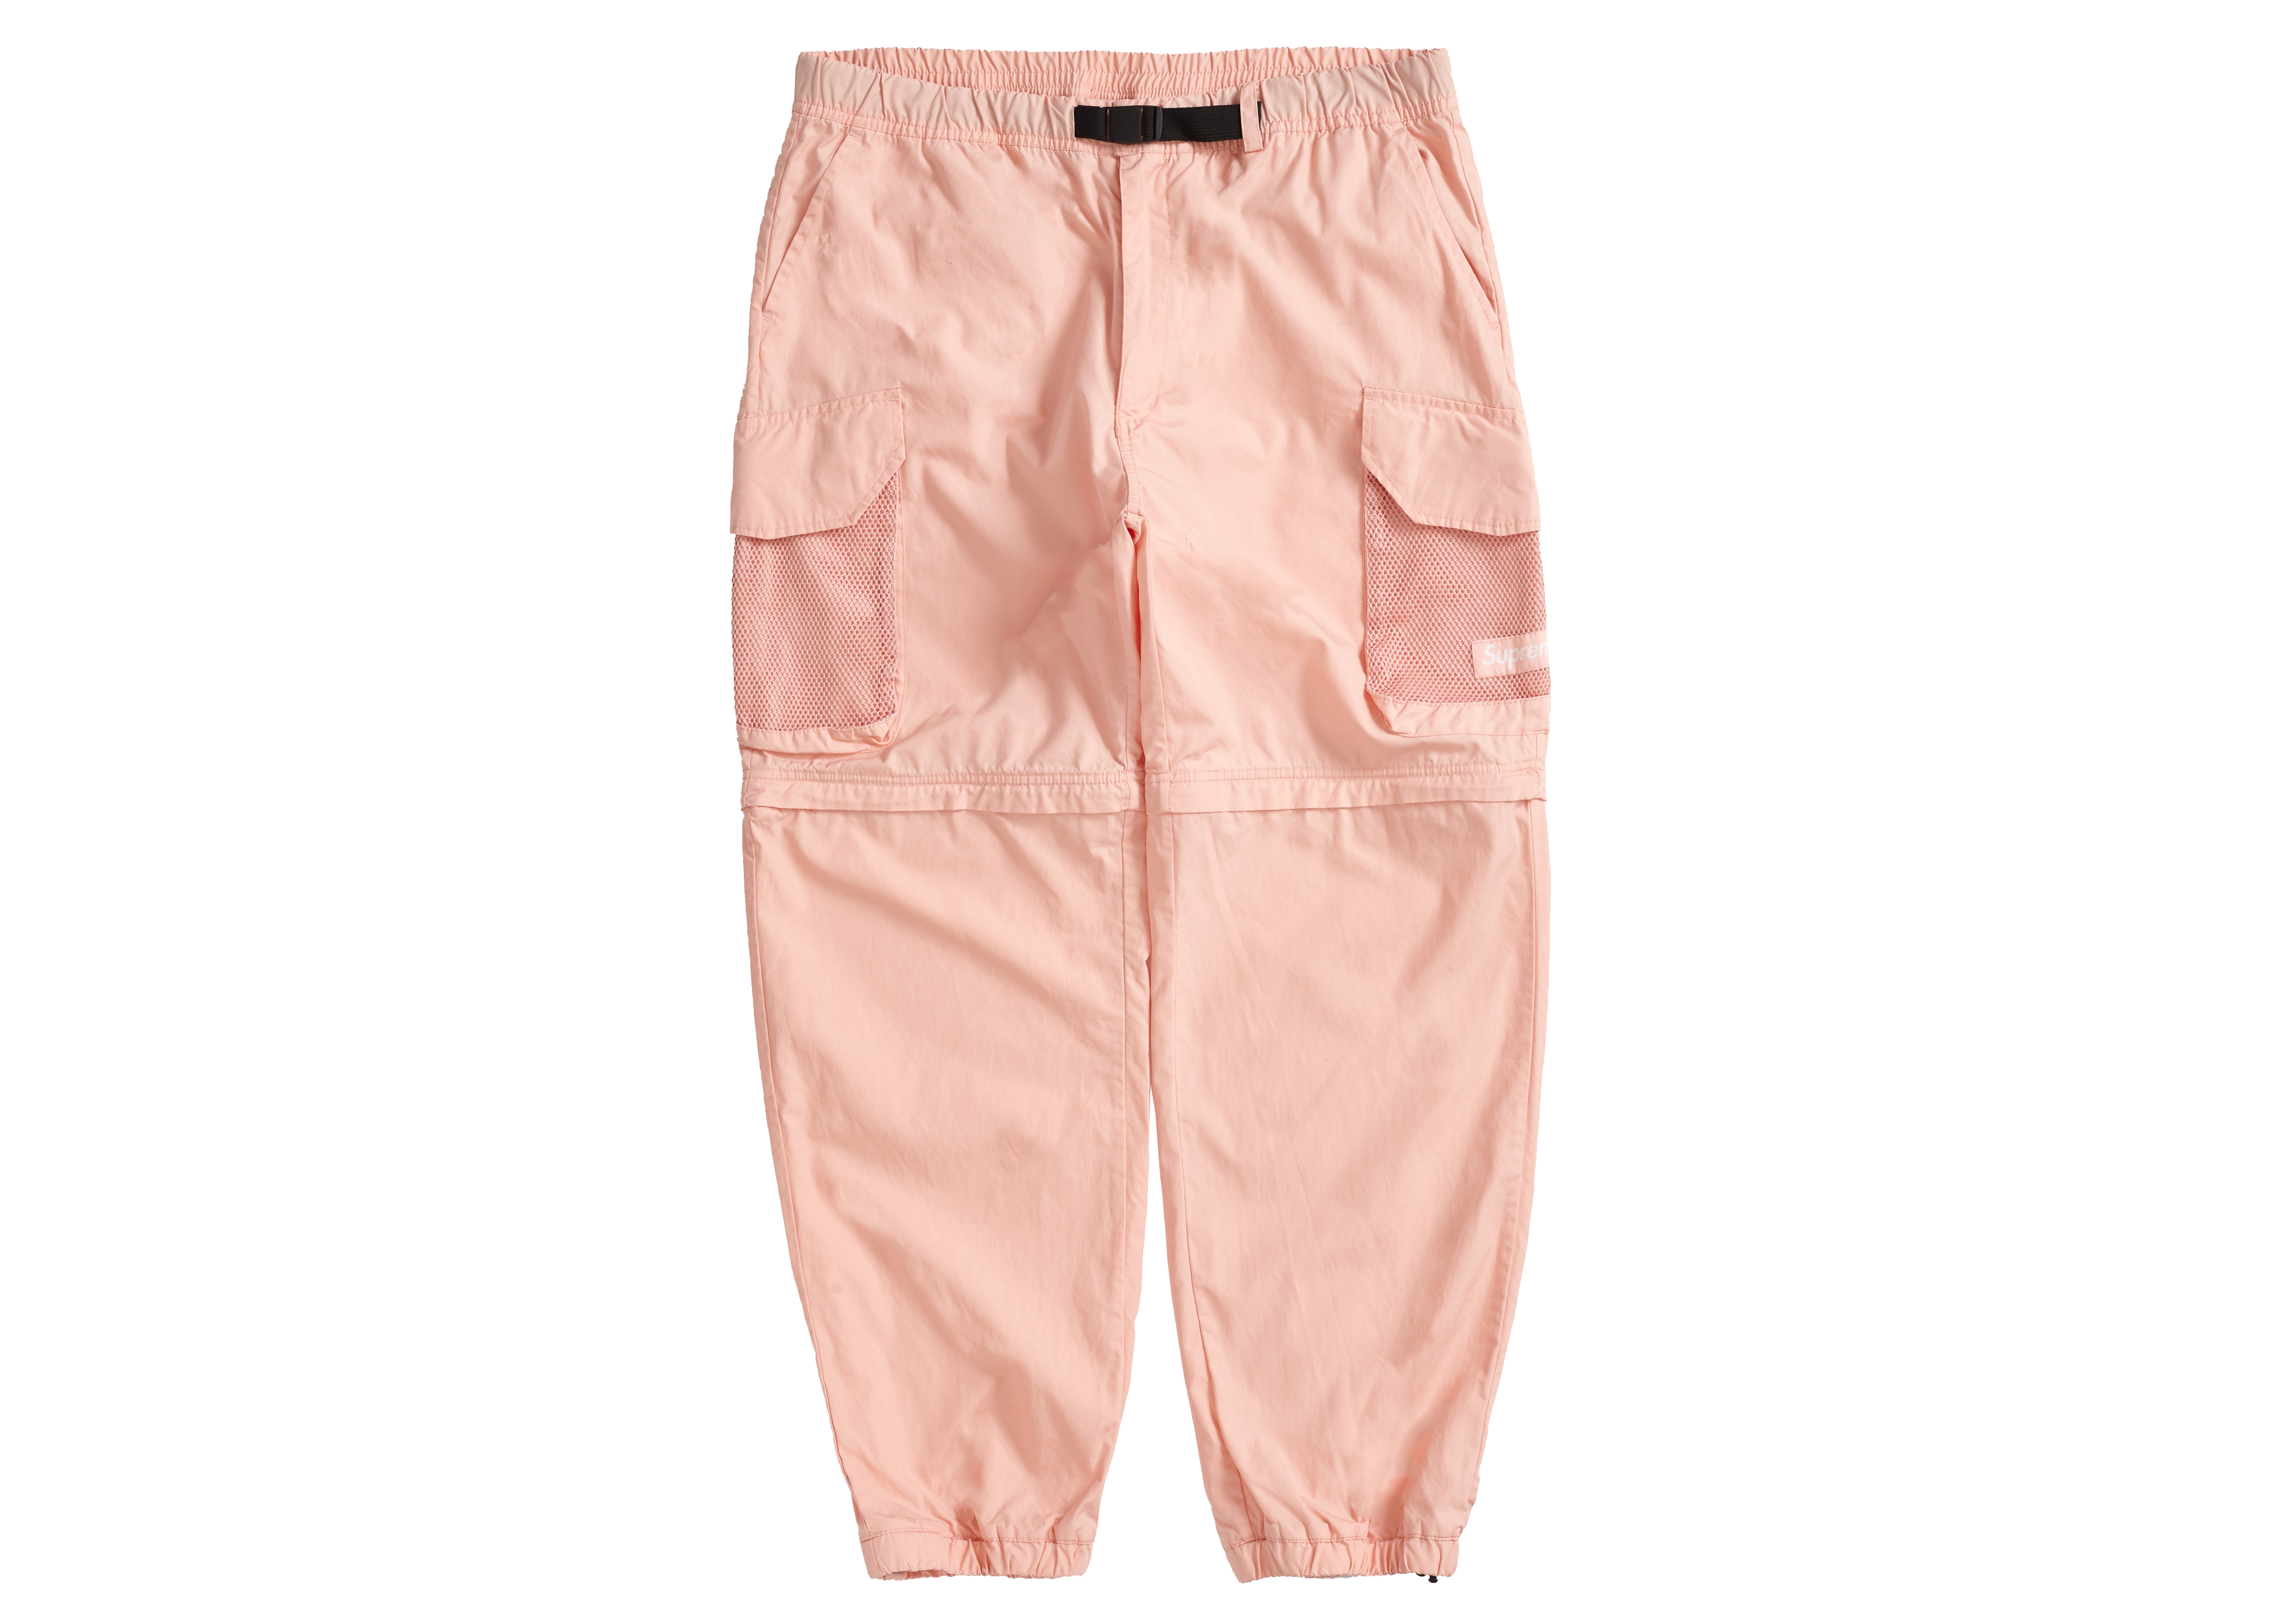 Supreme Mesh Pocket Belted Cargo Pant Slate Men's - SS21 - US